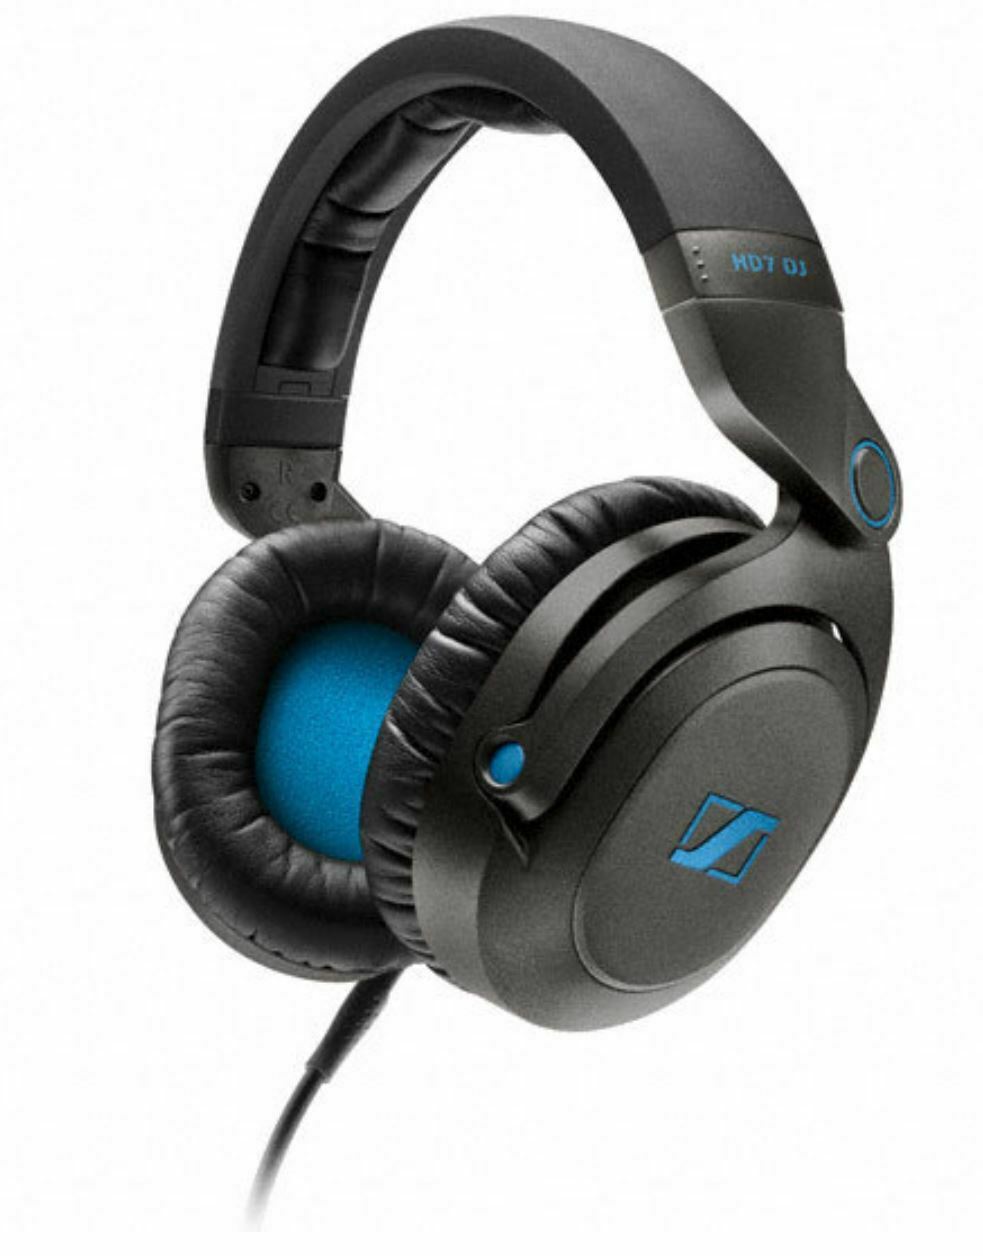 Sennheiser HD7 DJ Headband Headphones closed - Black/Blue